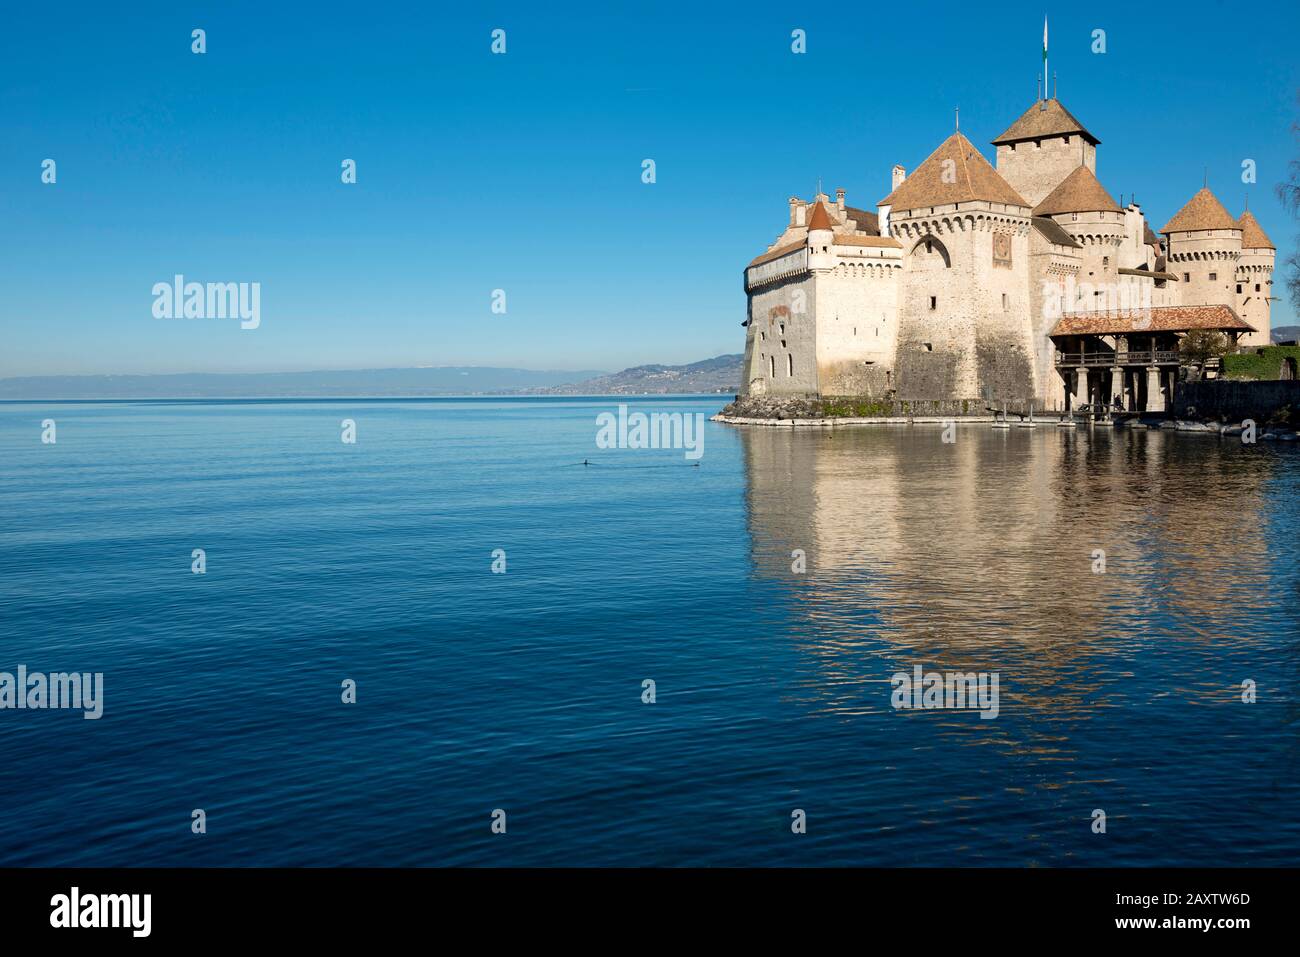 Switzerland Vaud, Waadt, Montreux, Veytaux, Château de Chillon, Schloss, castle, Lac Léman, Genfer See, Geneva Lake, printemps, Frühling, spring Stock Photo